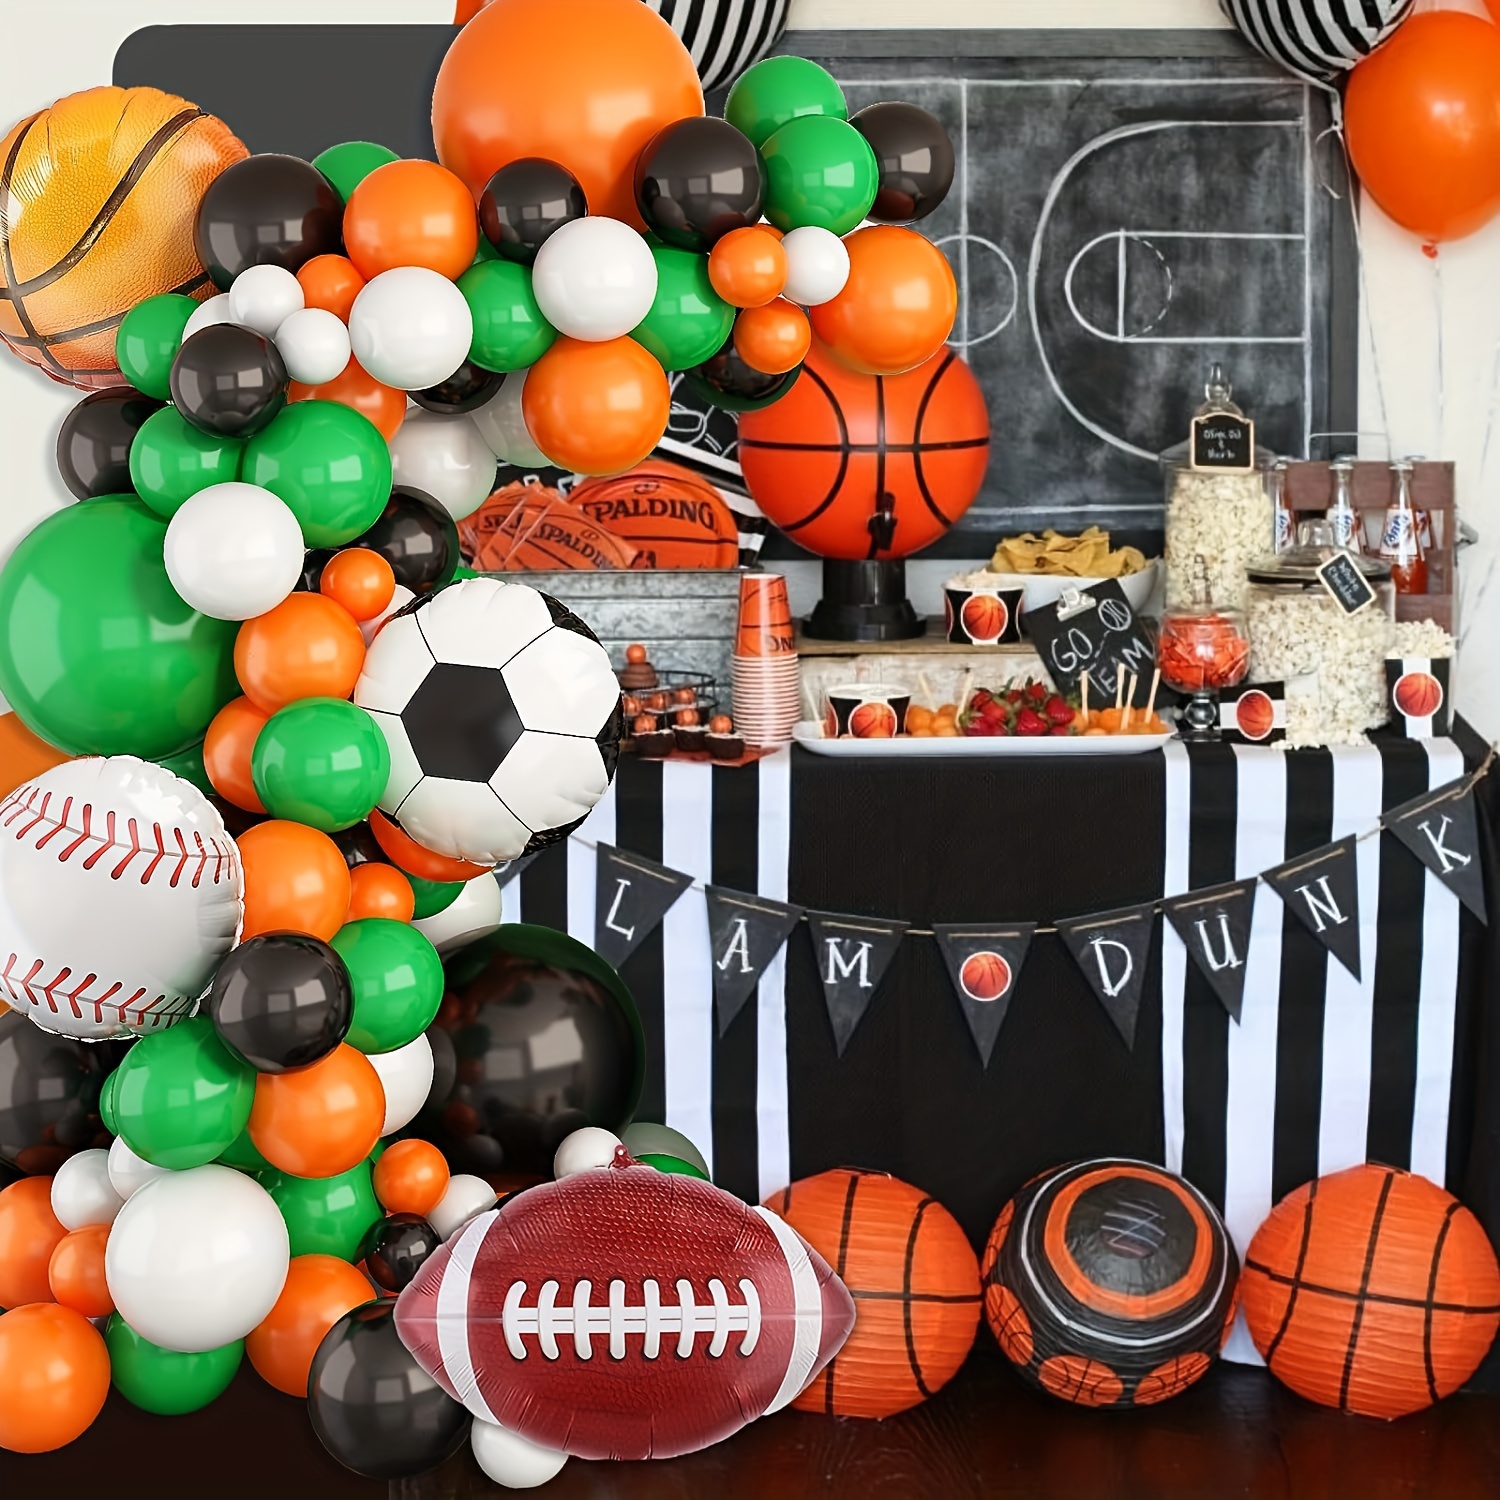  Proveedor de globos de fiesta de fútbol, 5 globos de trofeo de  campeonato y globos de papel de aluminio para niños, cumpleaños, baby  shower, decoración de fiesta temática de fútbol 